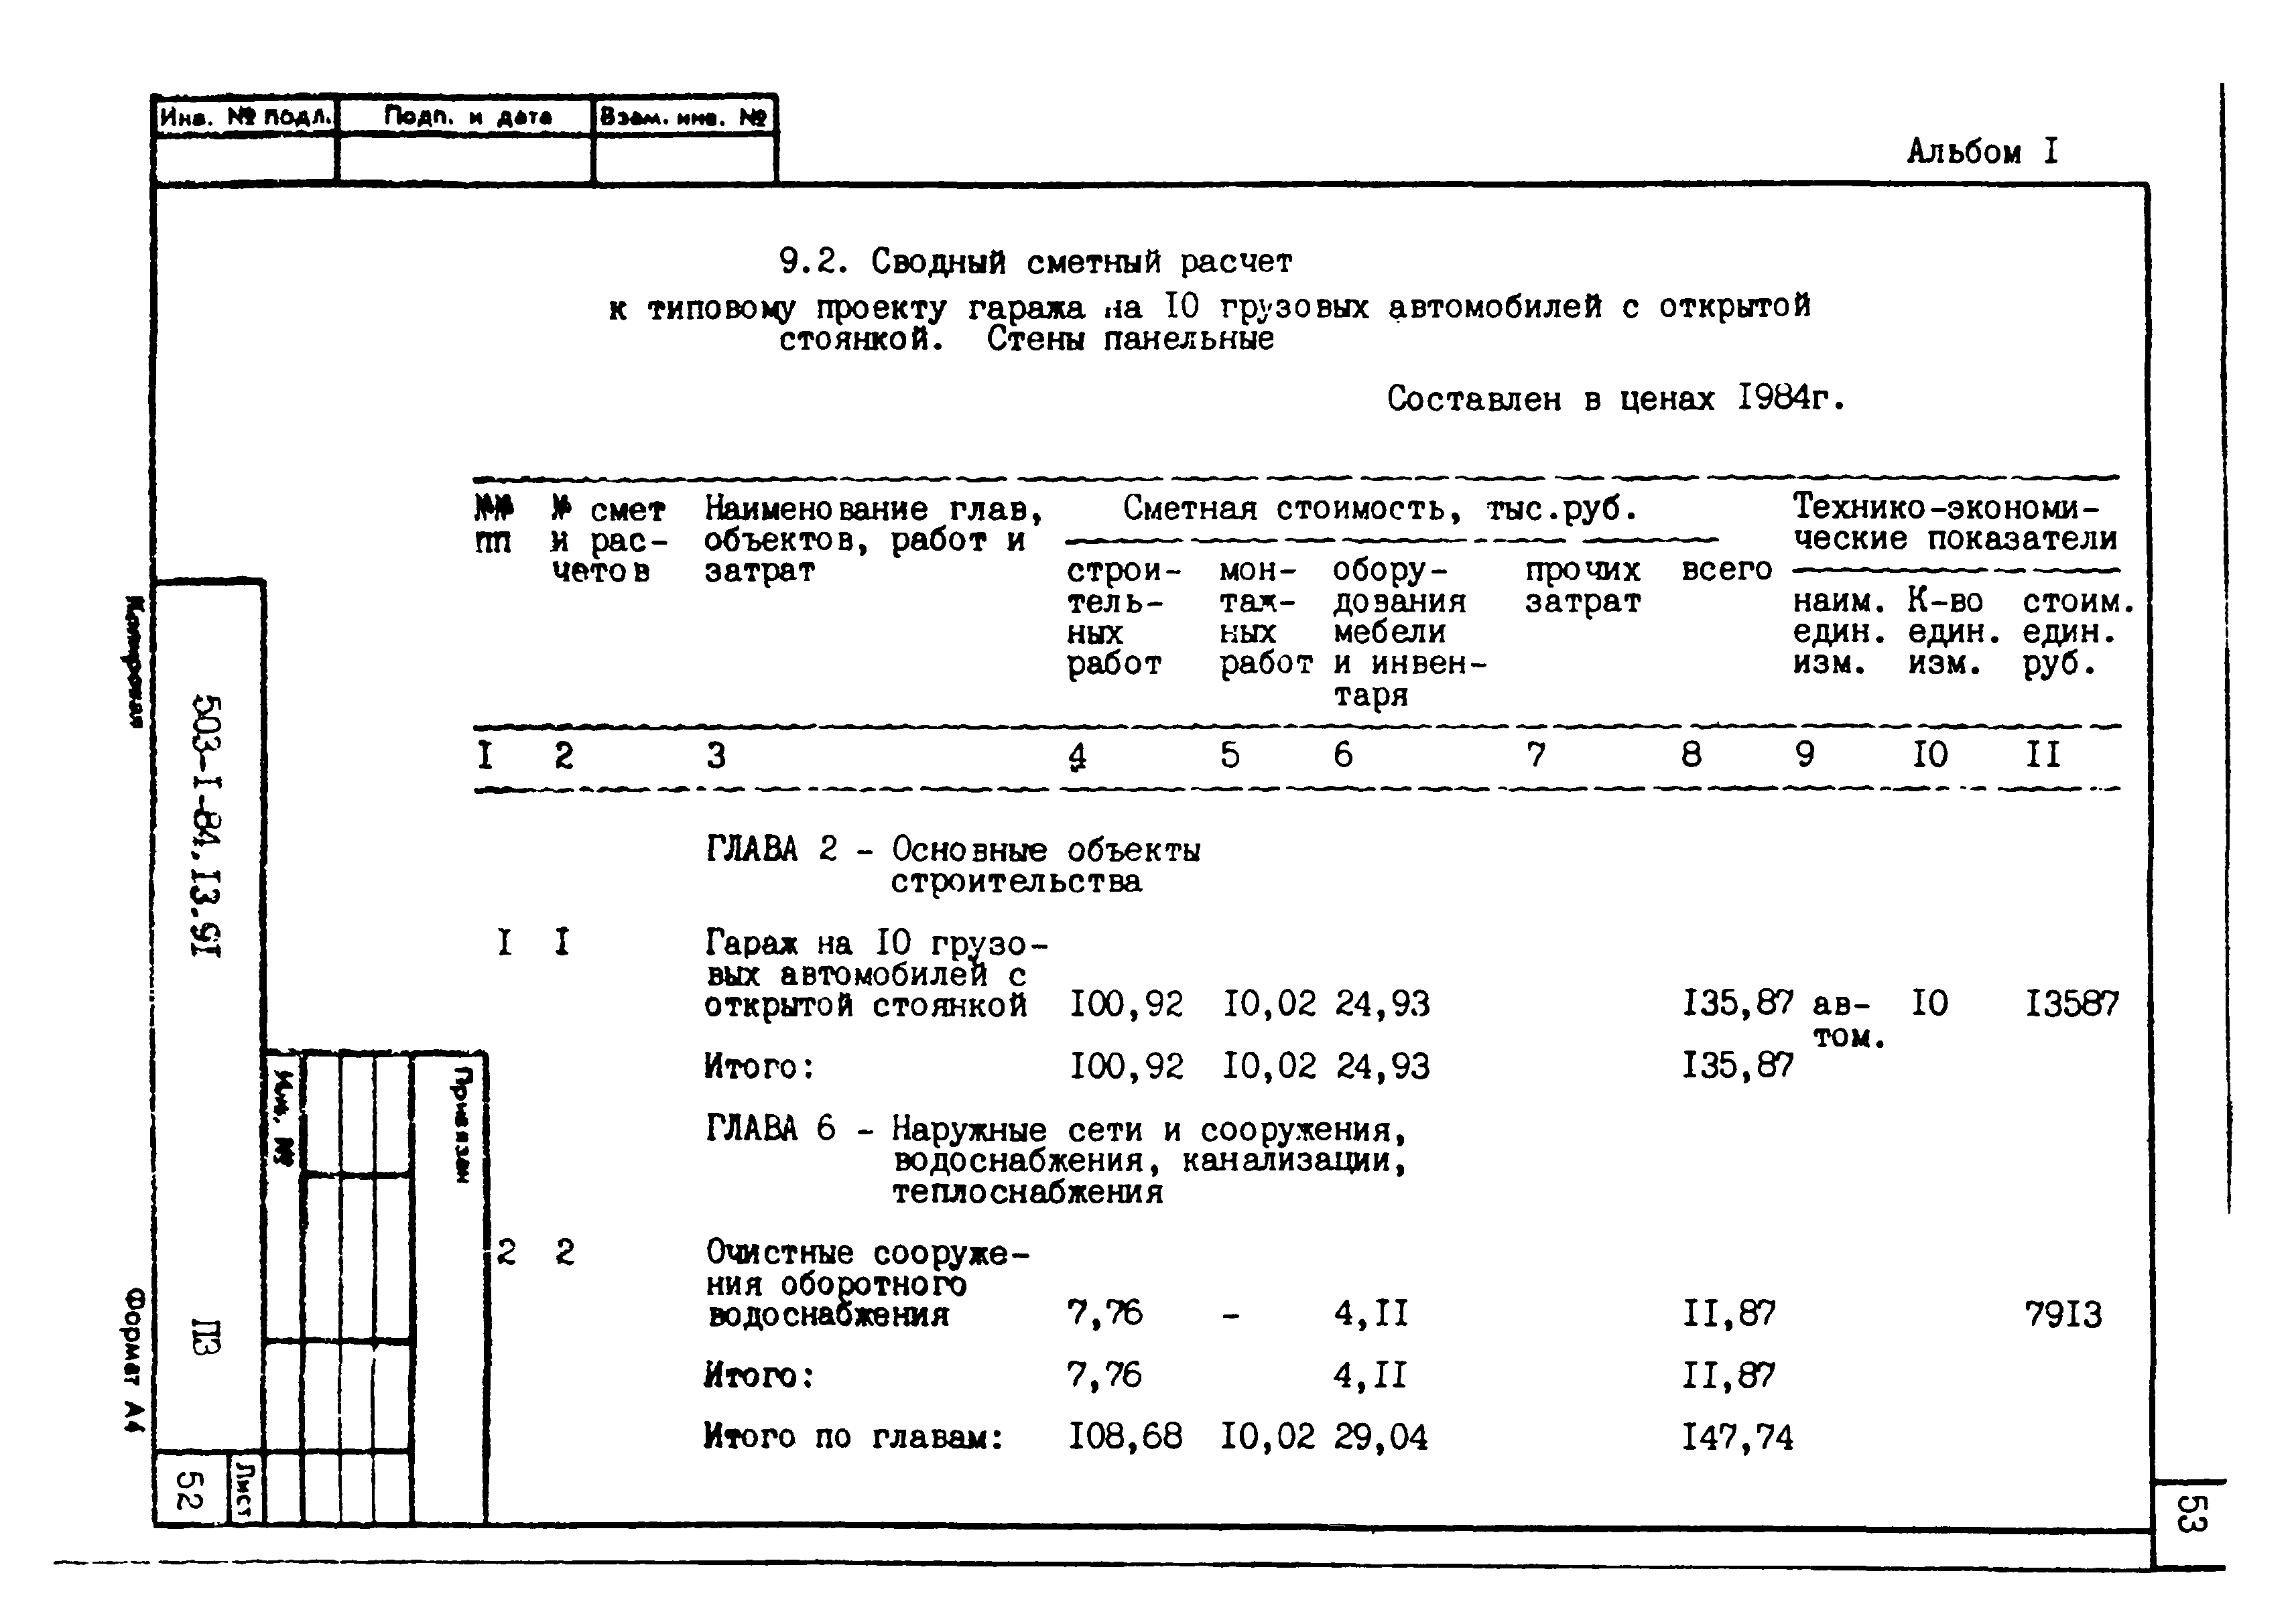 Типовой проект 503-1-84.13.91